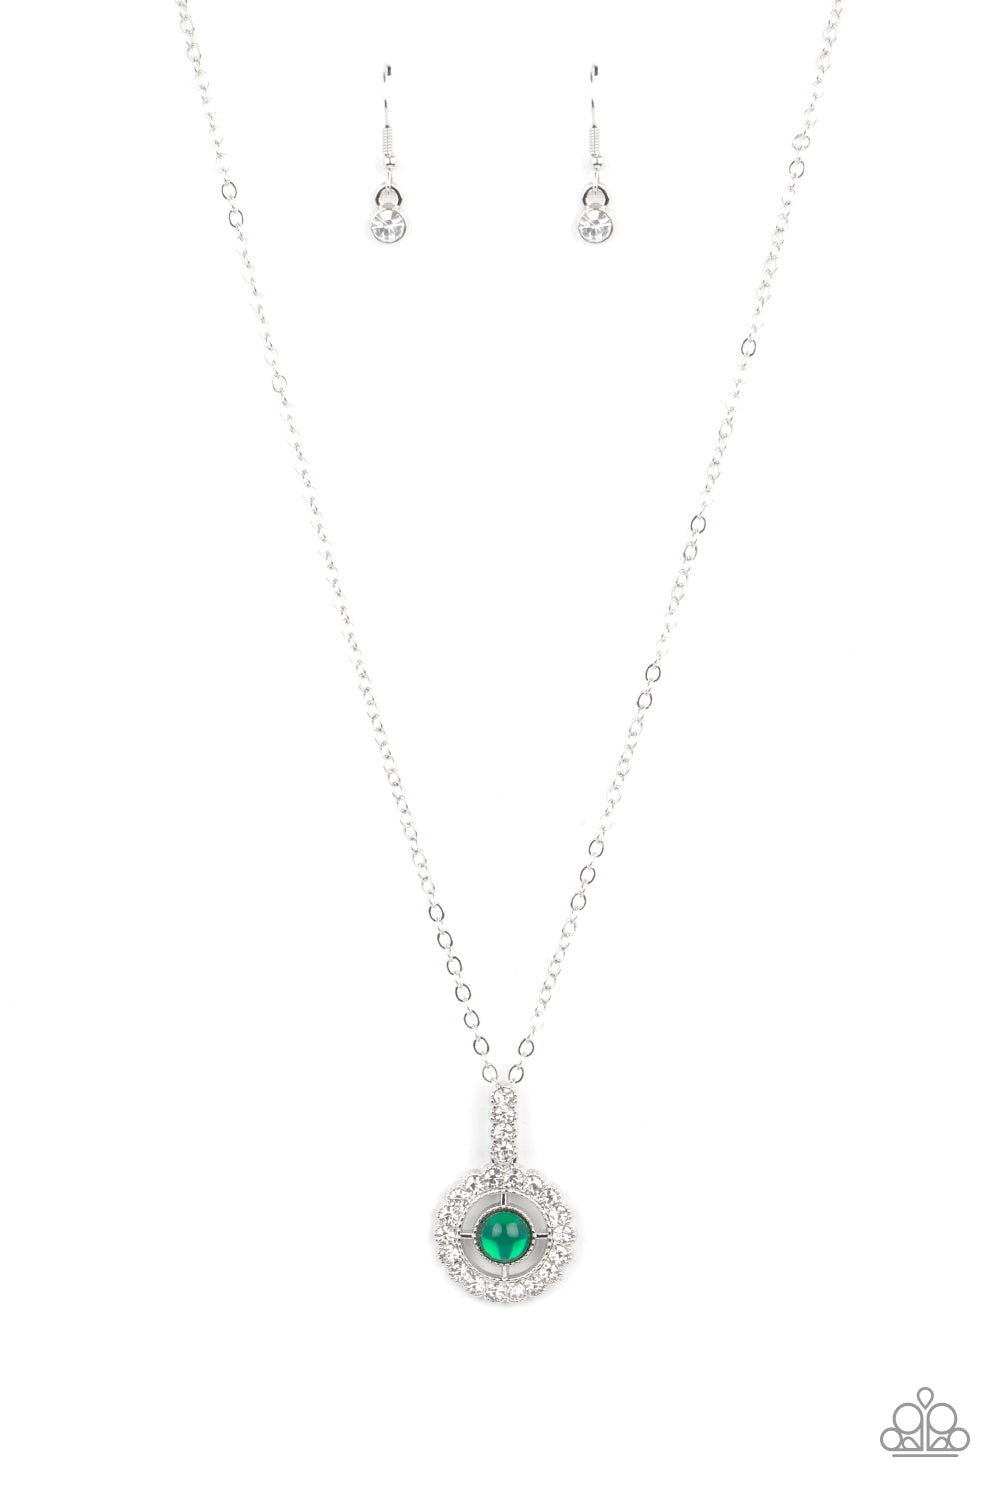 Springtime Twinkle - Green Necklace freeshipping - JewLz4u Gemstone Gallery